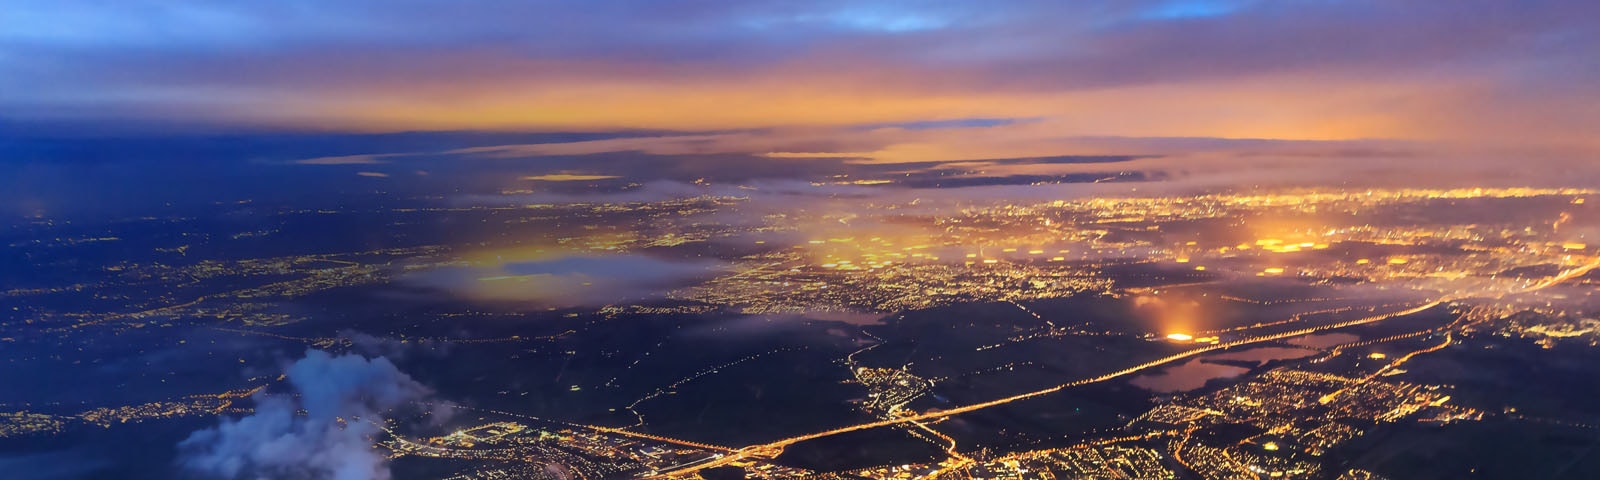 ネットワーキング テクノロジーのトレンド - 空から見た都市の夜景